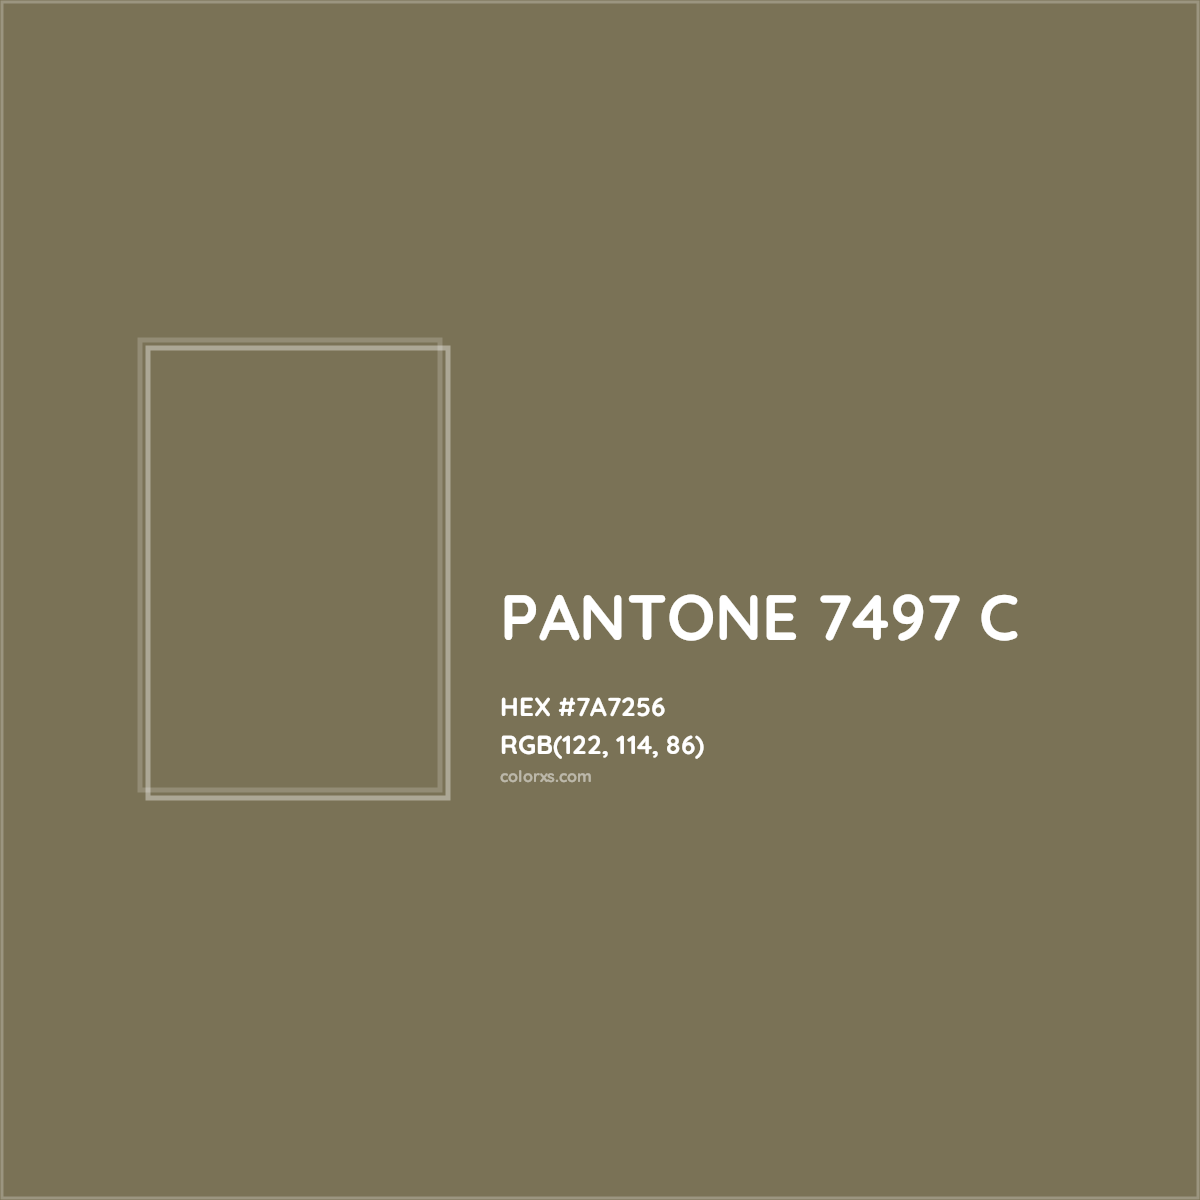 HEX #7A7256 PANTONE 7497 C CMS Pantone PMS - Color Code